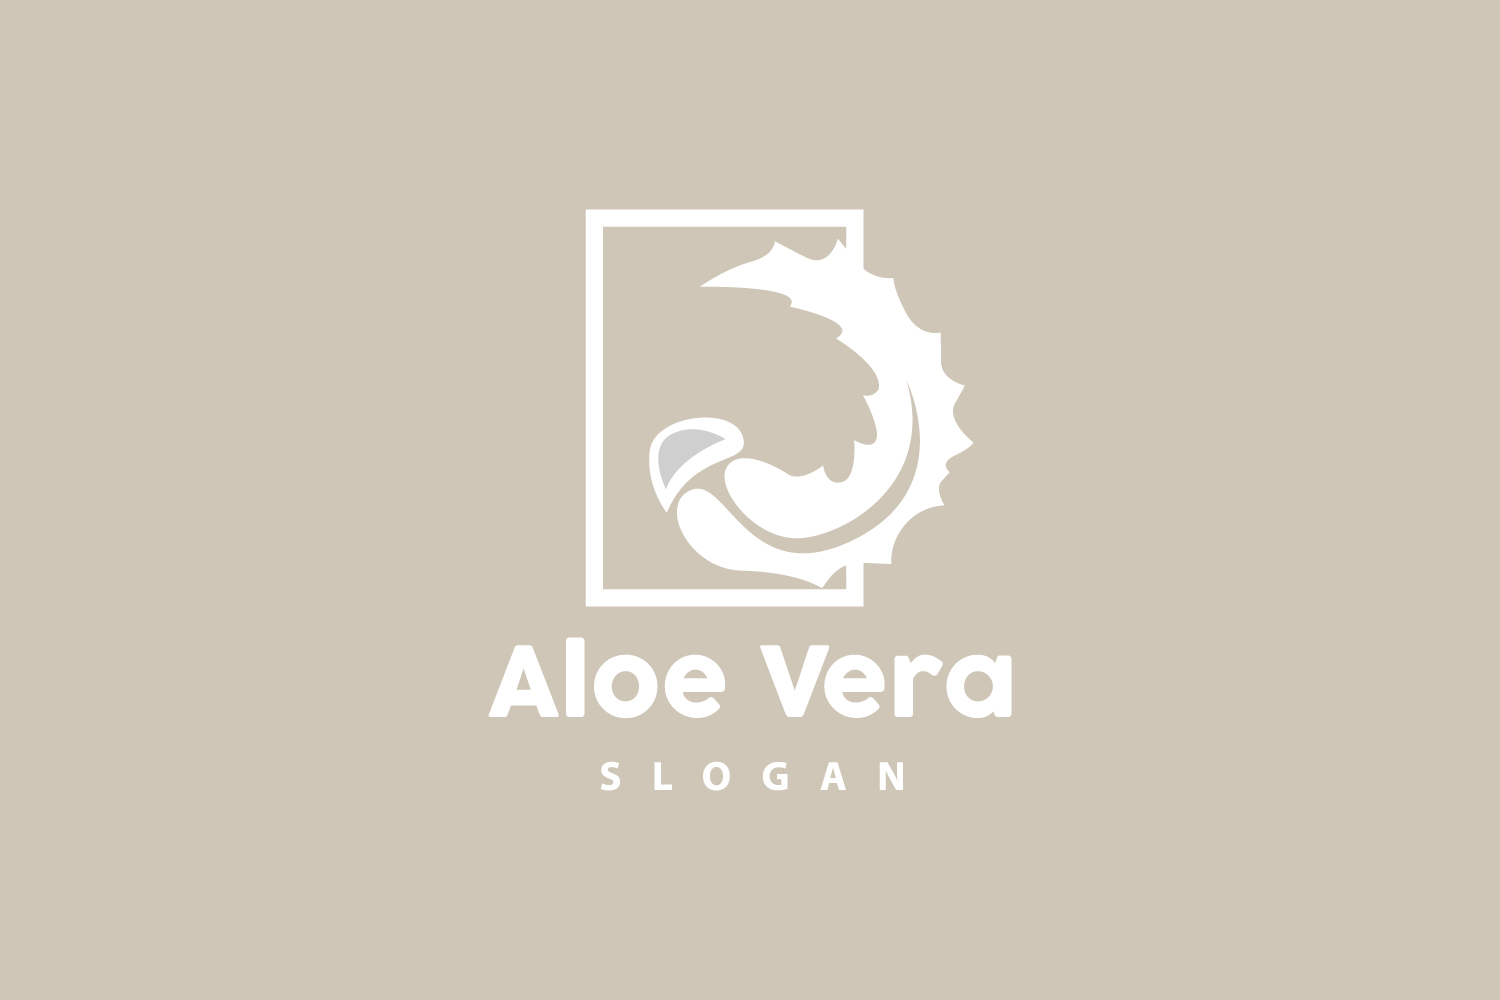 Aloe Vera Logo Herbal Plant VectorV20